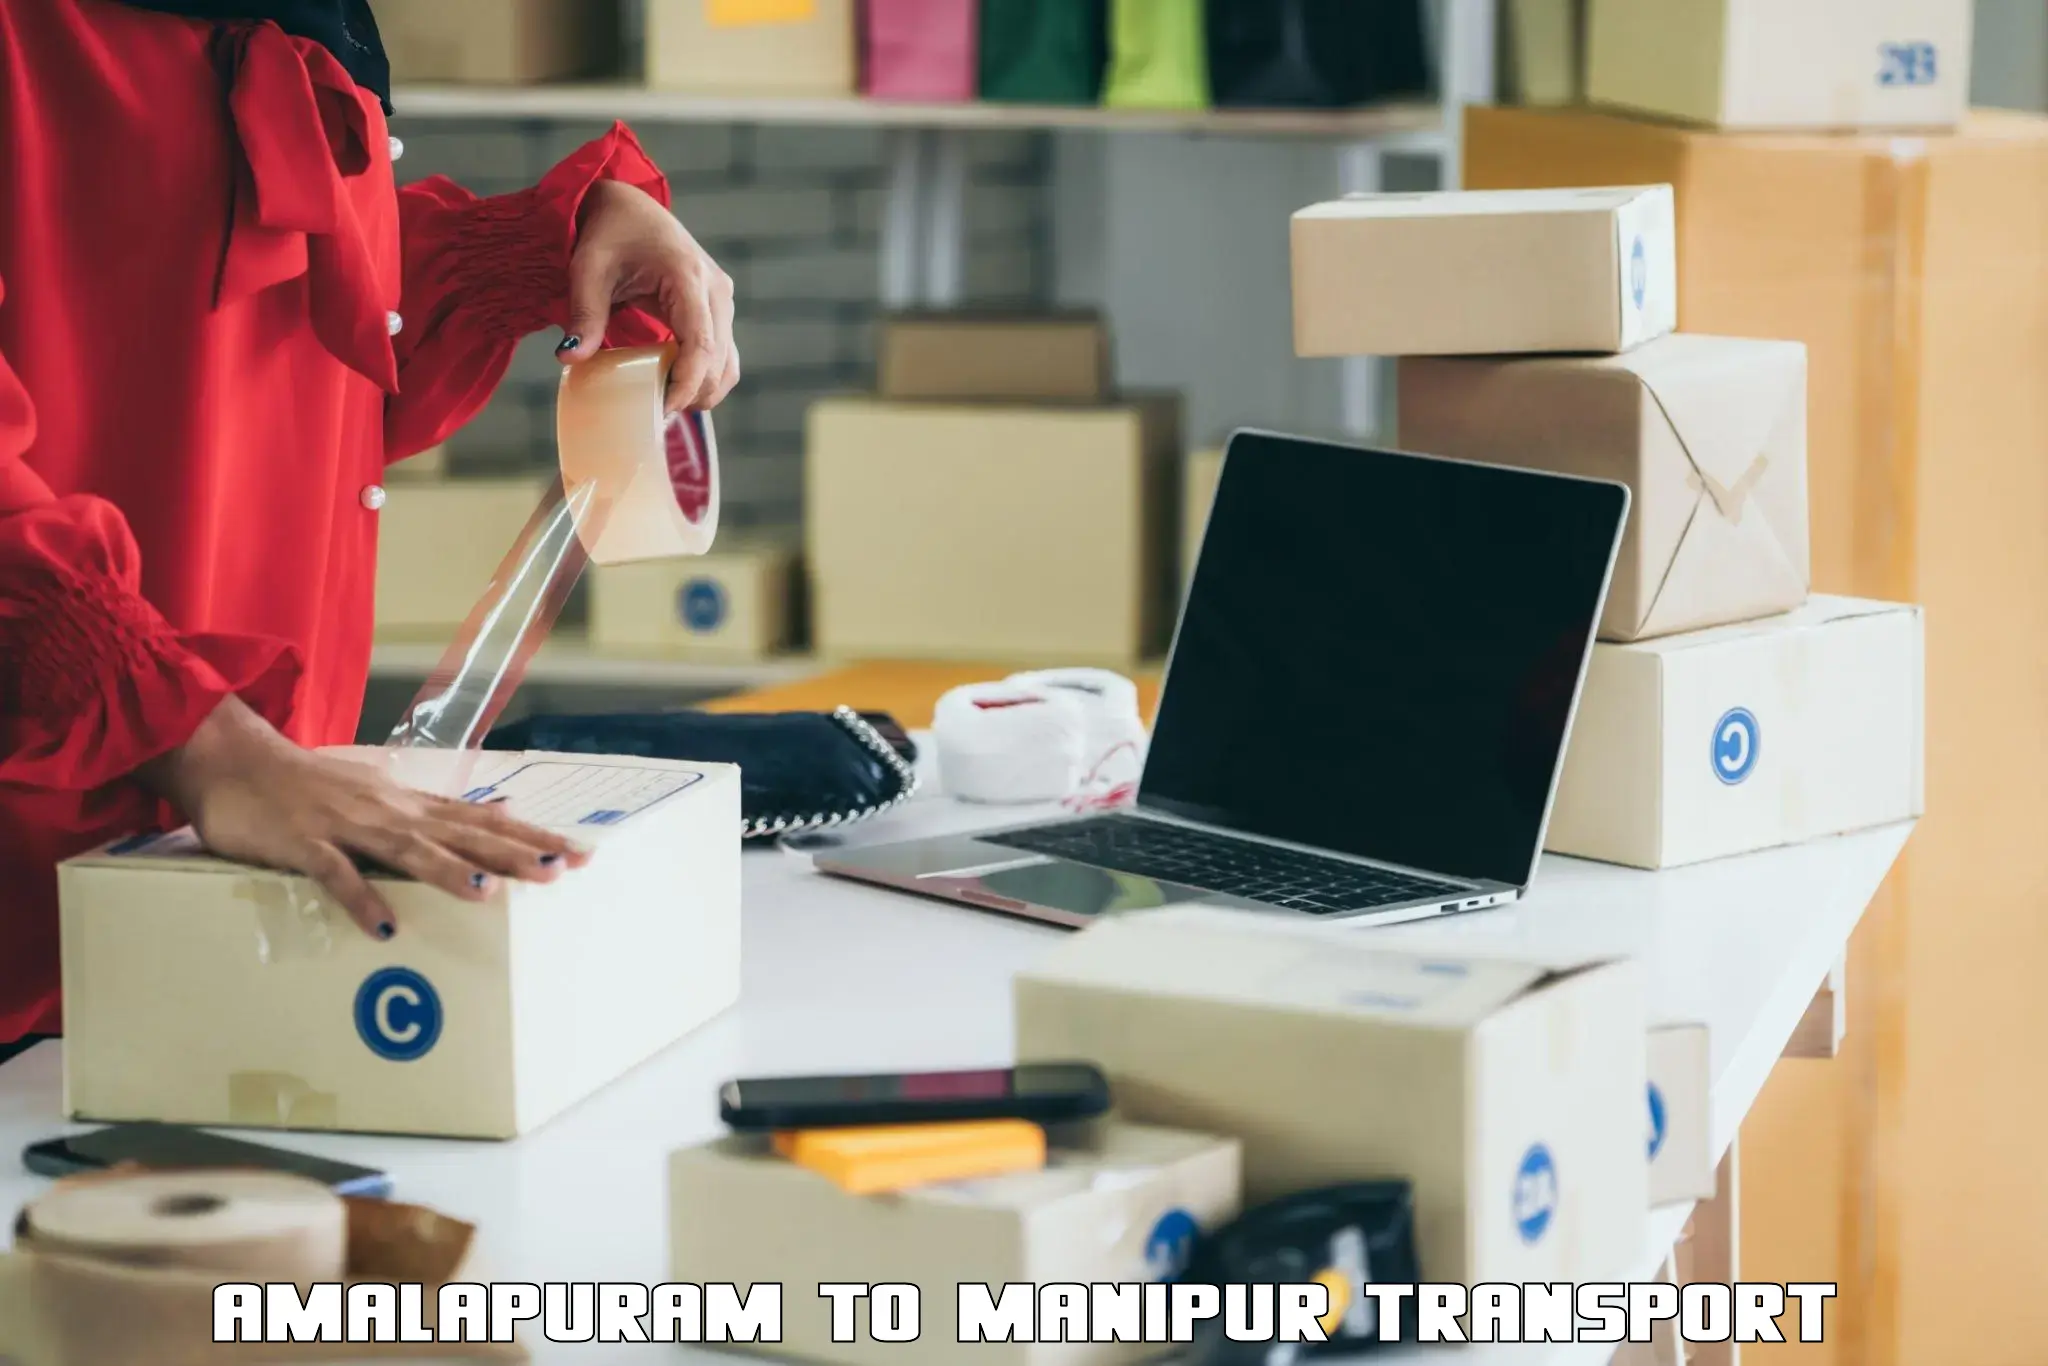 Cycle transportation service Amalapuram to Manipur